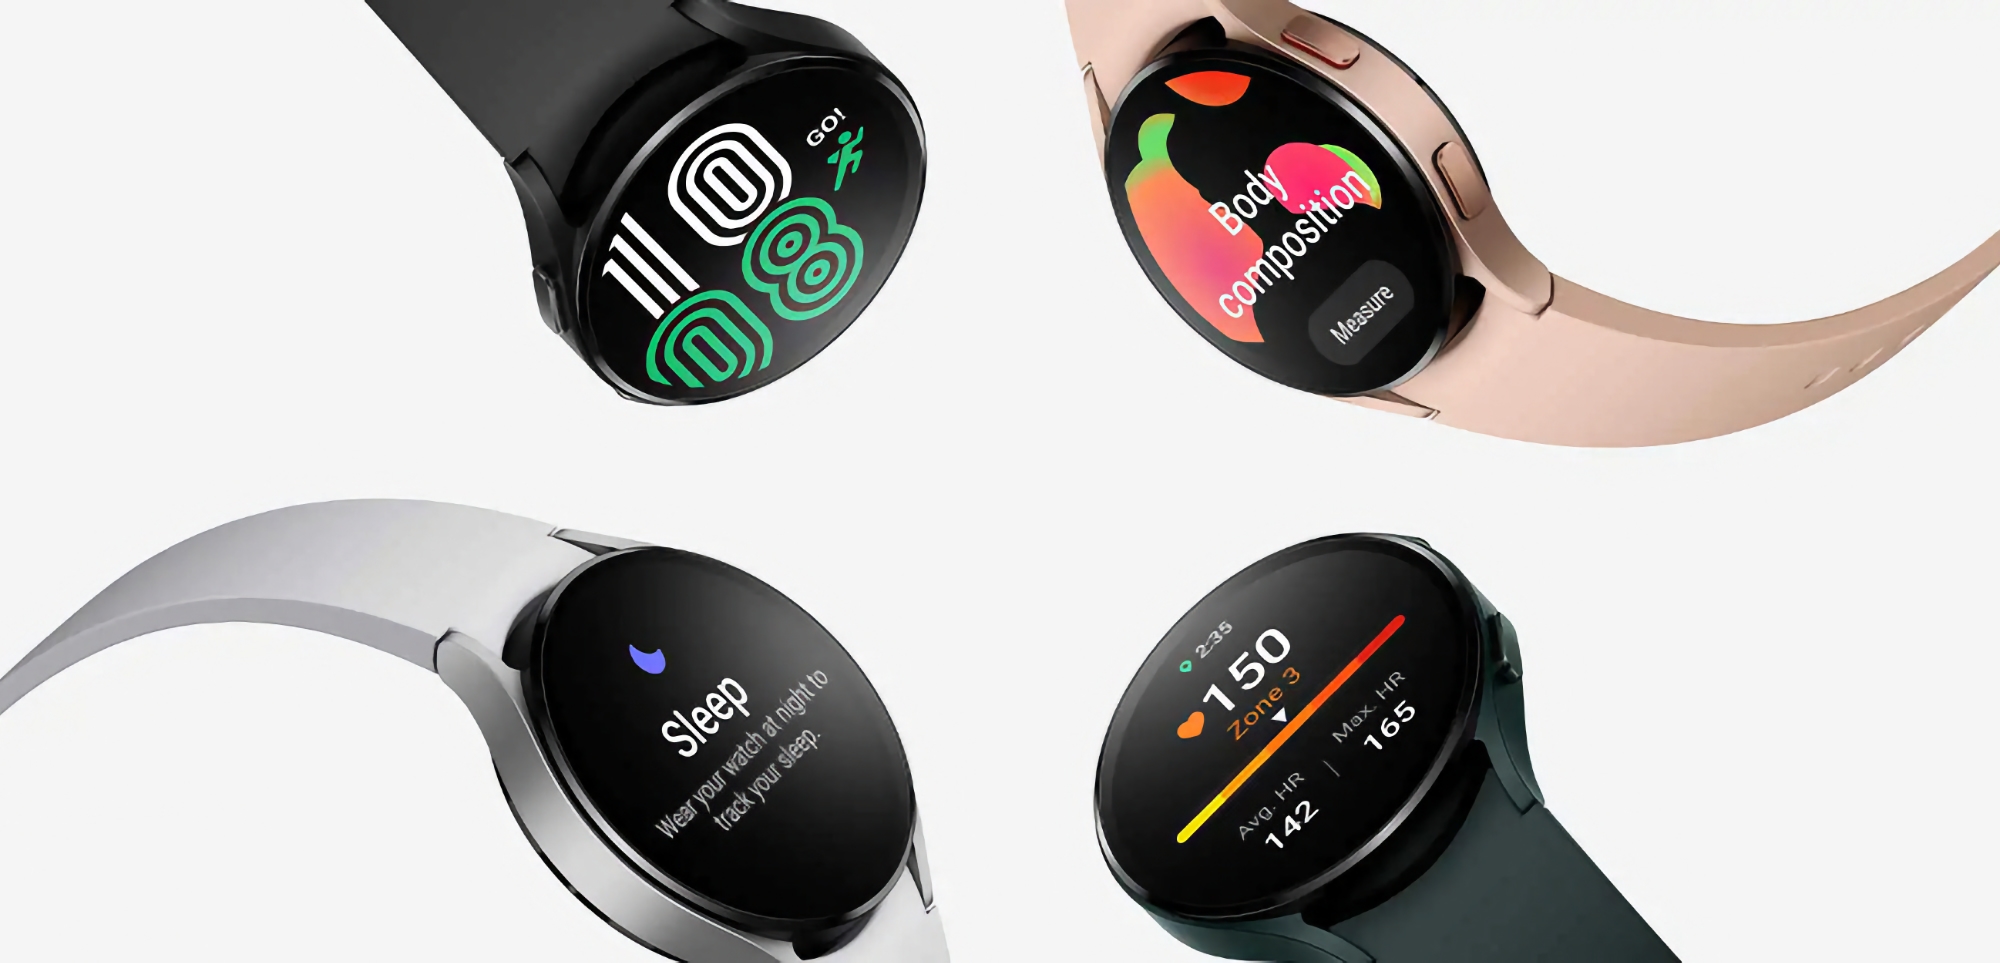 Il n'y a pas que les Galaxy Buds Pro 2 : la smartwatch Galaxy Watch 4 peut également être achetée sur Amazon avec une forte réduction.